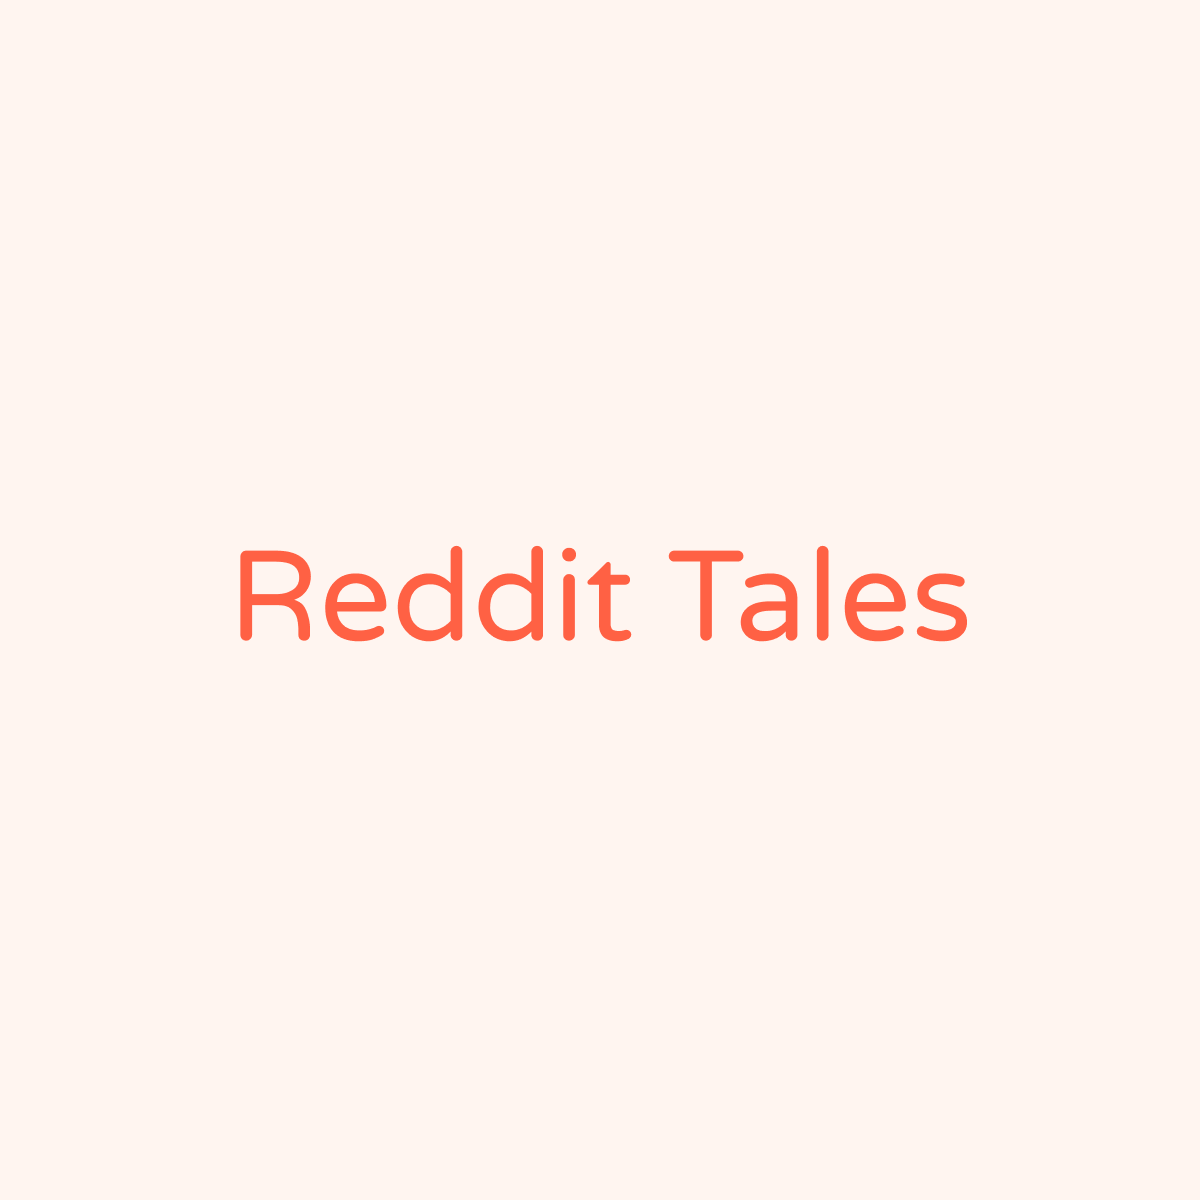 Reddit Tales